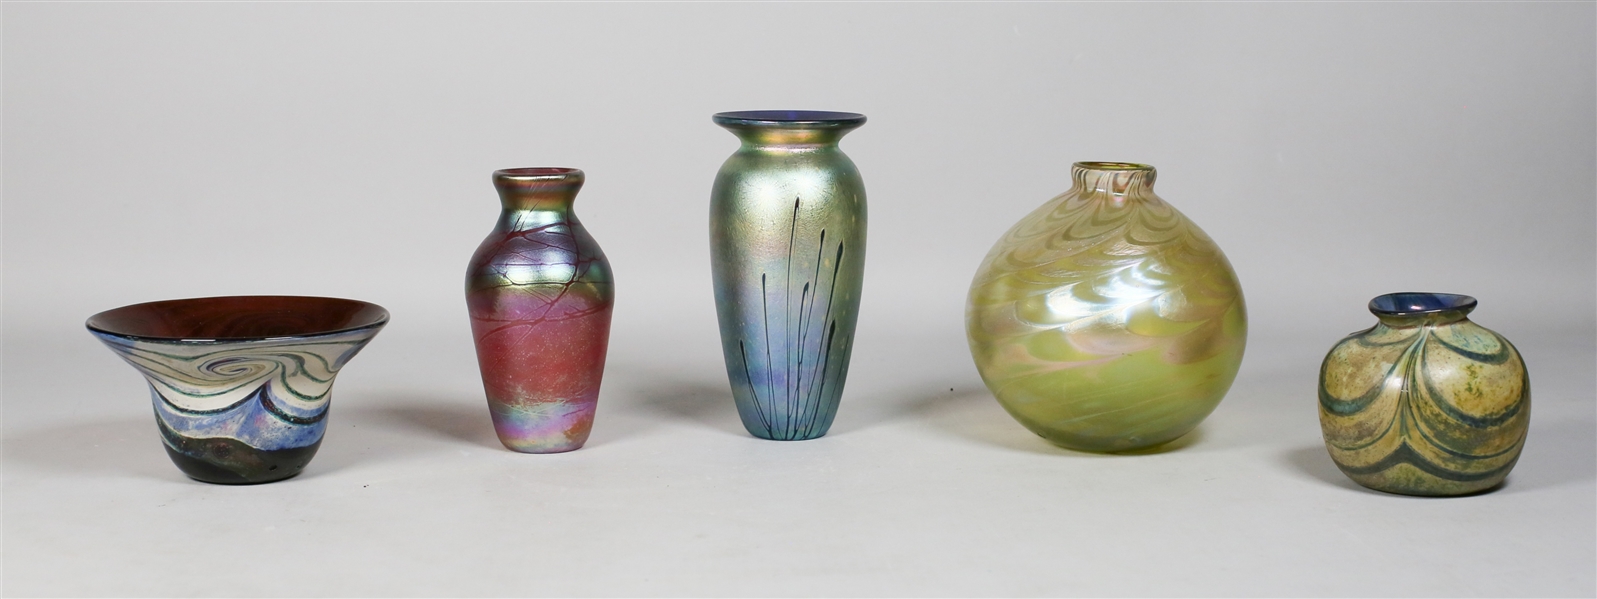 5 Stephen Fellerman Studio Glass Vases